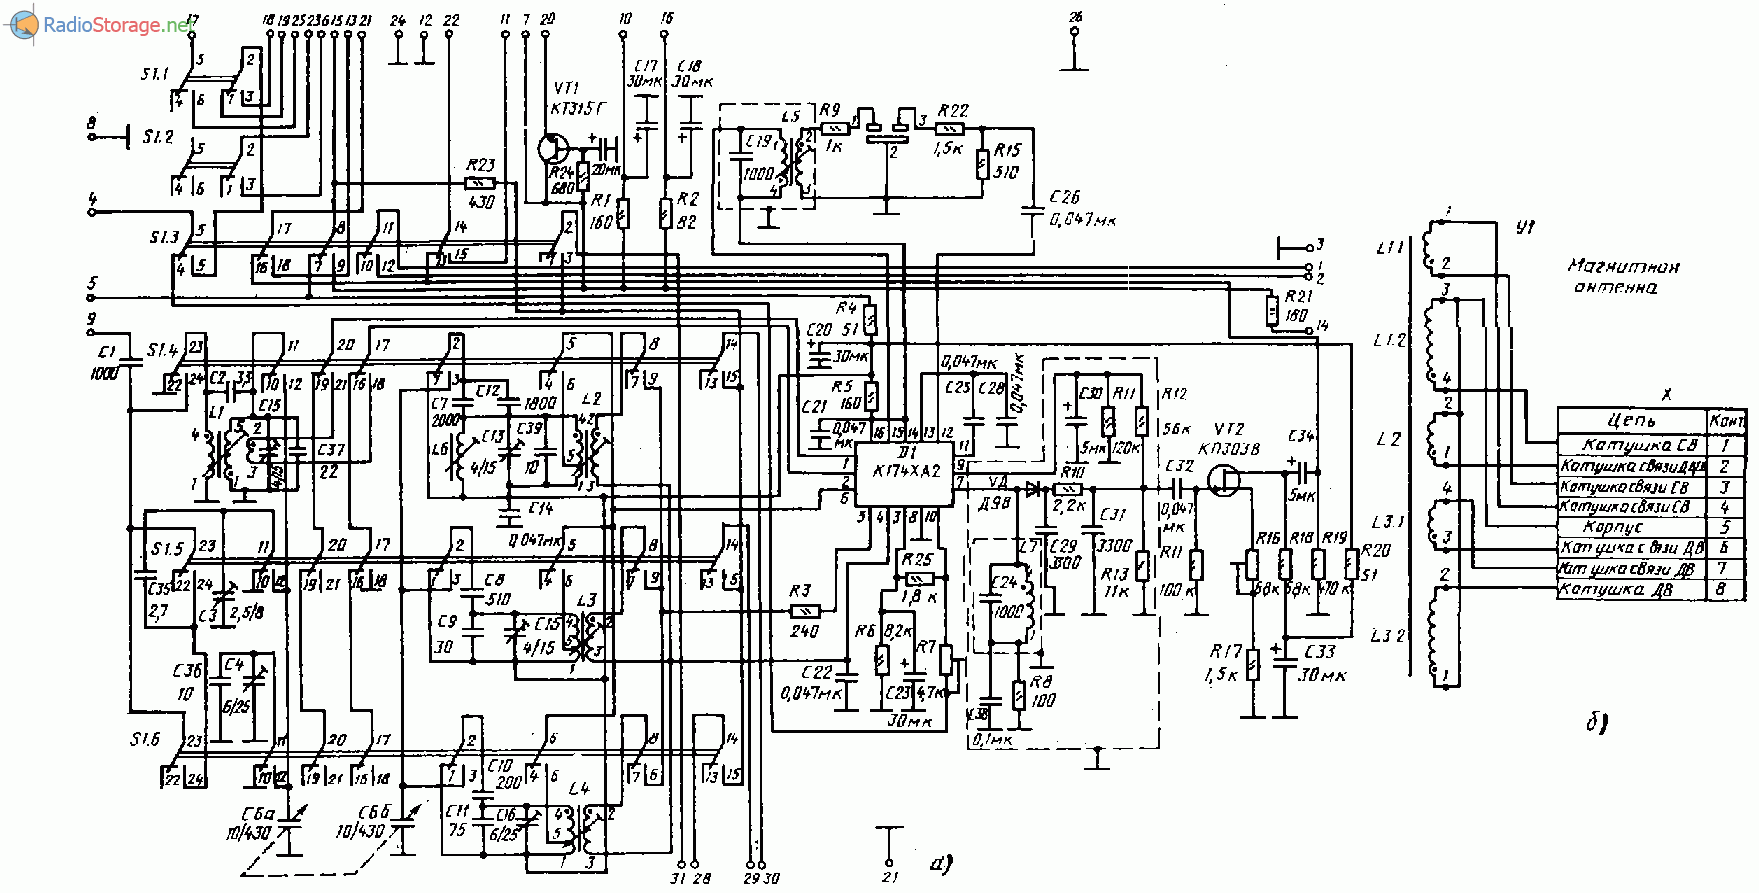 Такт-001 стерео (тюнер, магнитофон, усилитель), схема